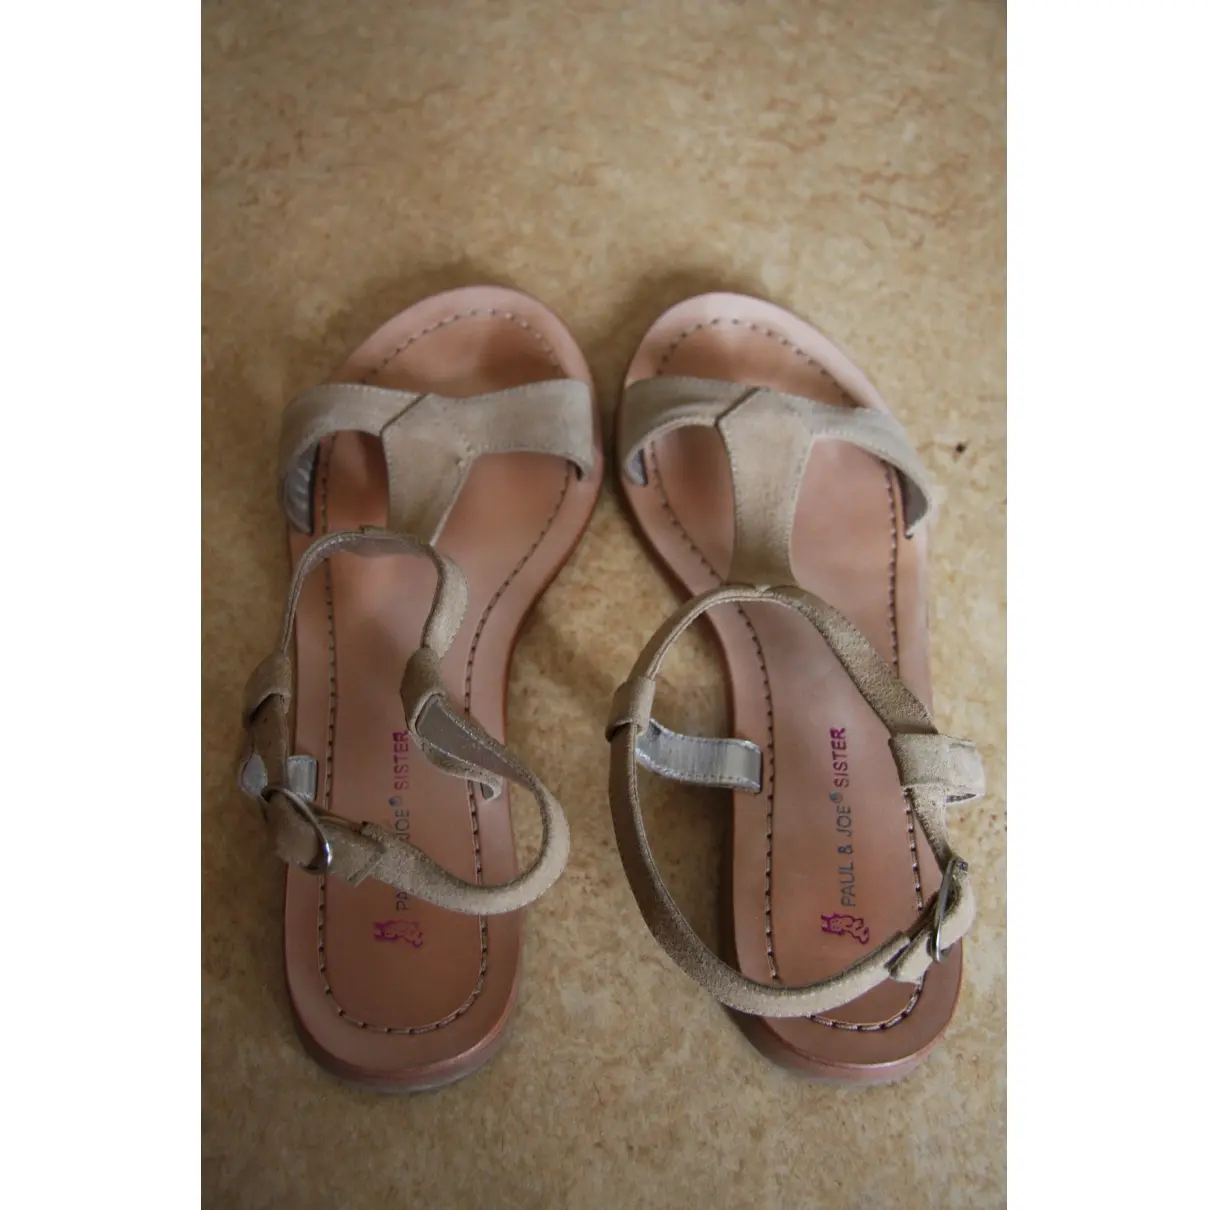 Buy Paul & Joe Sister Sandals online